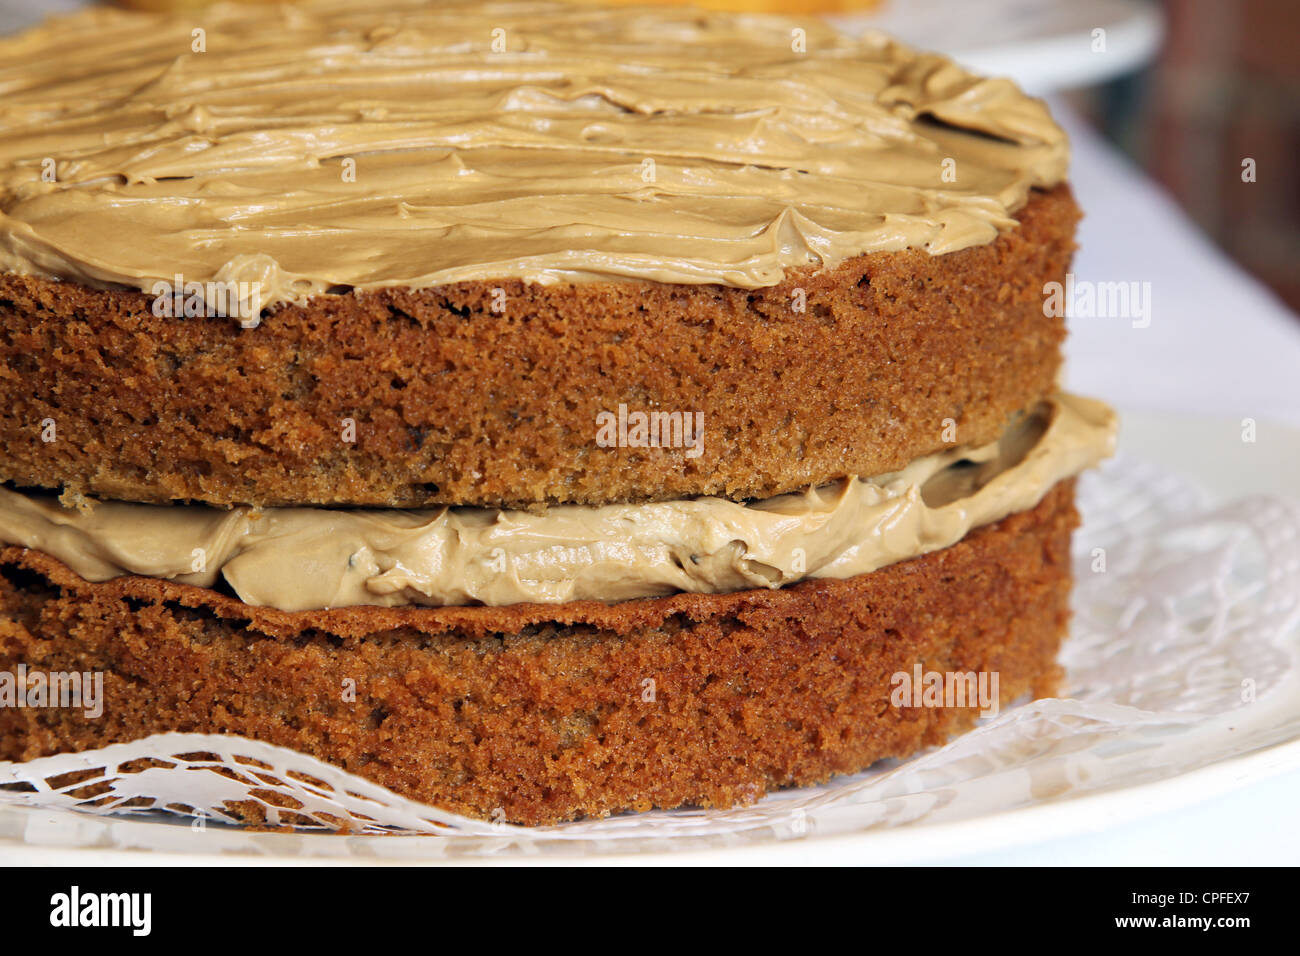 Coffee sponge cake Stock Photo